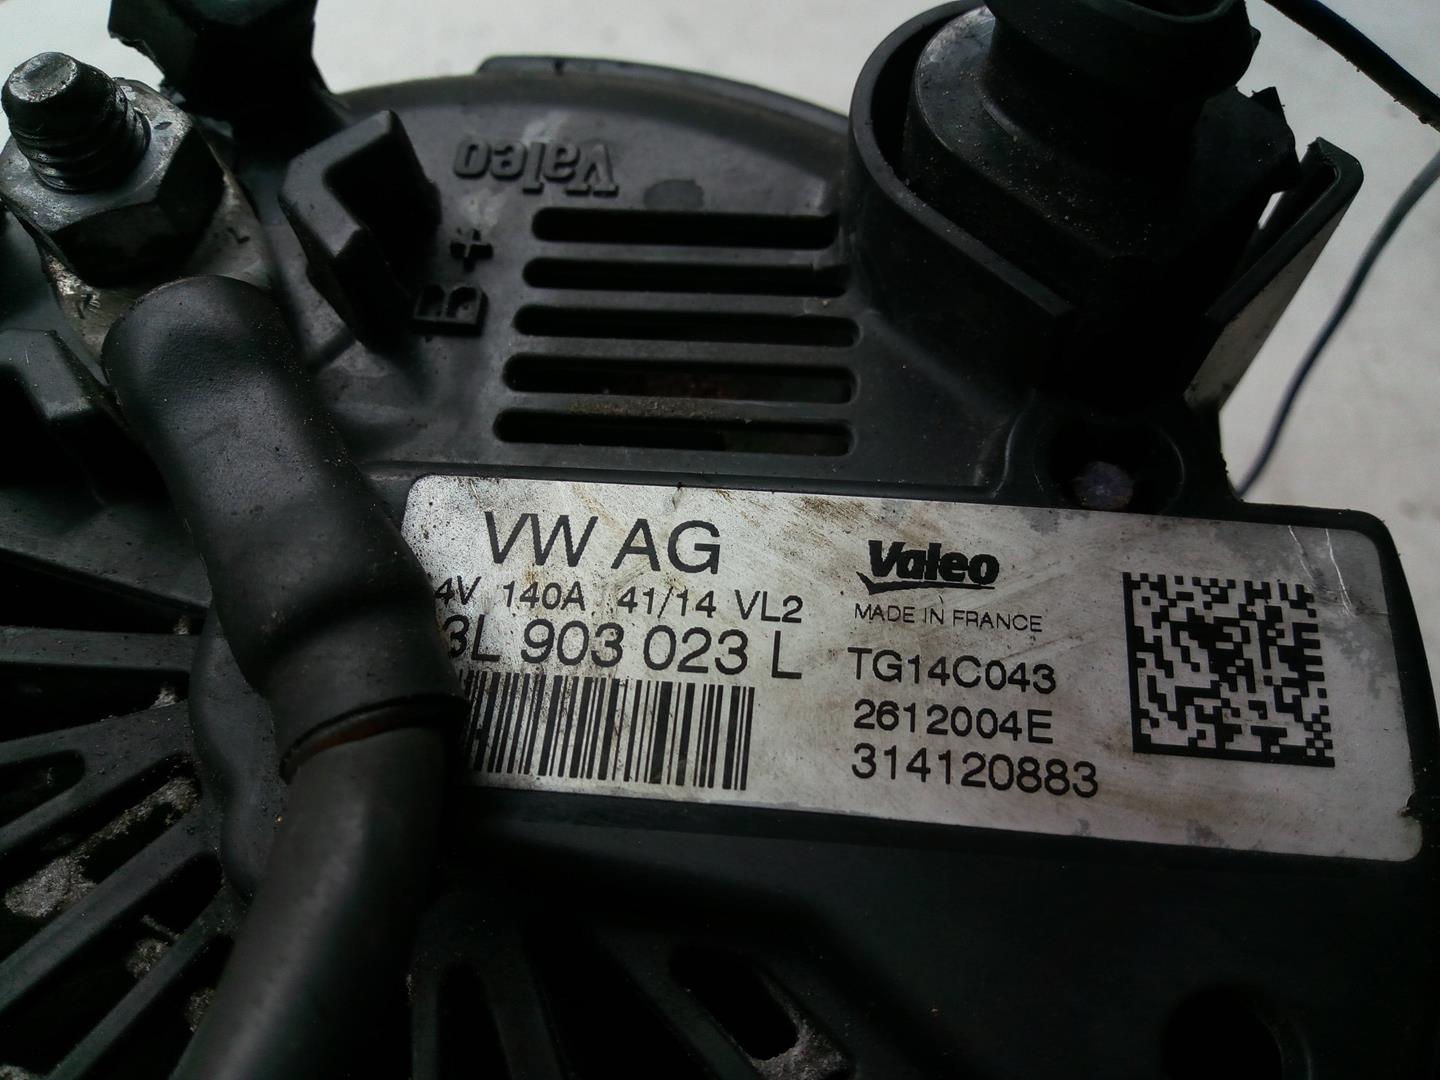 AUDI A3 8V (2012-2020) Generatorius 03L903023L, TG14C0432612004E 18526935